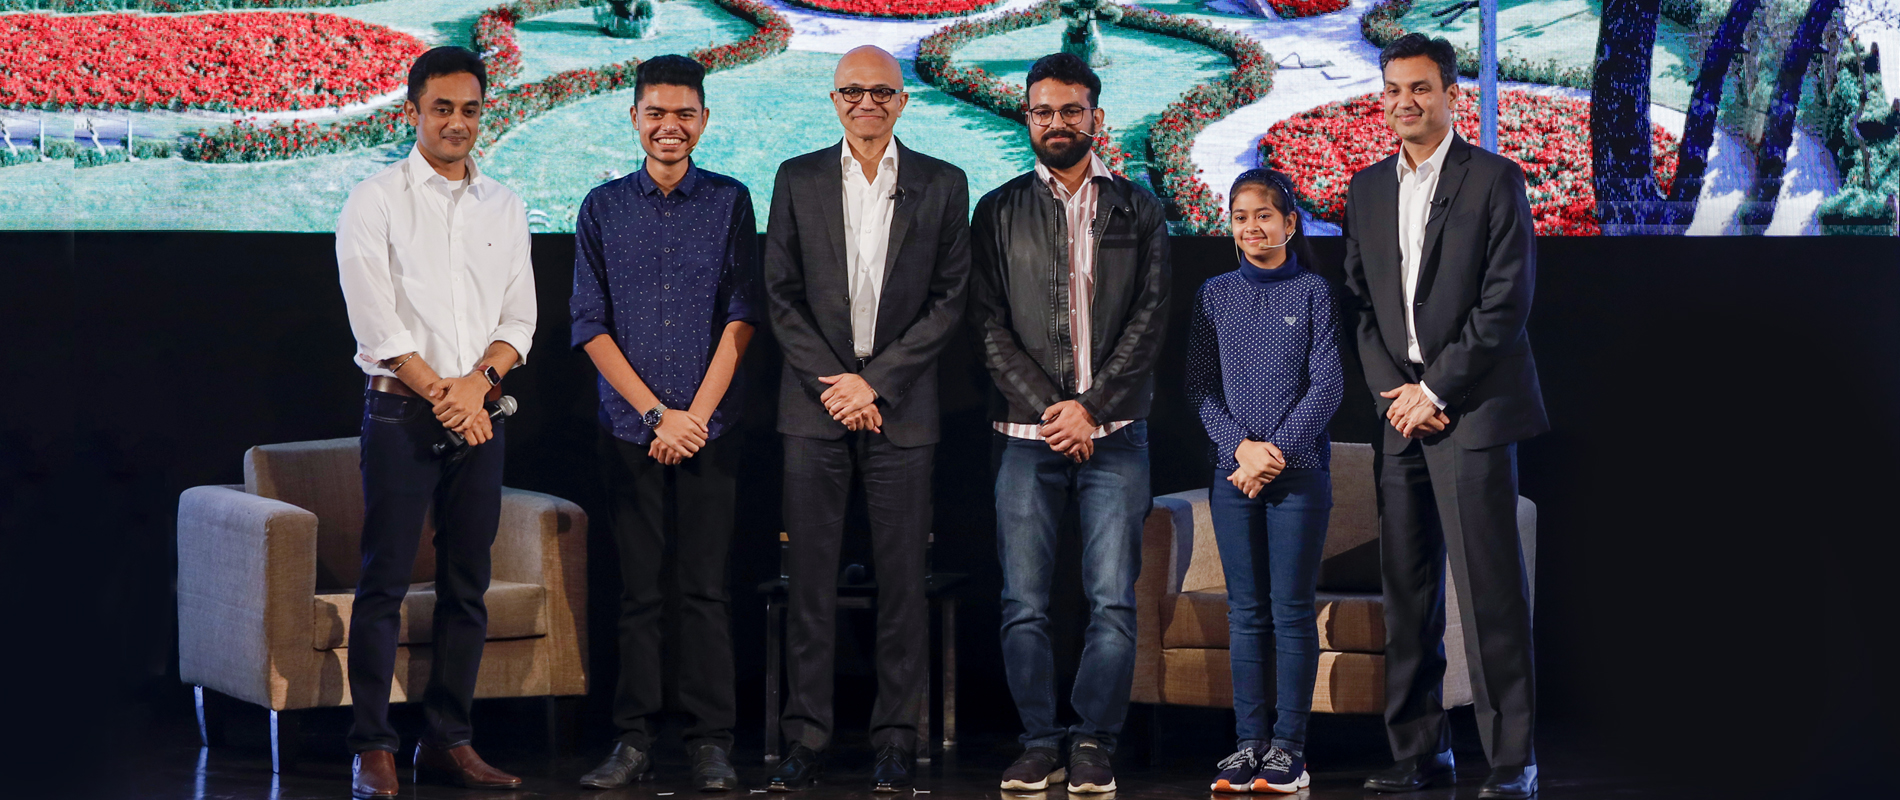 4 young innovators, Satya Nadella, CEO of Microsoft and Anant Maheshwari, President of Microsoft India posing for the camera